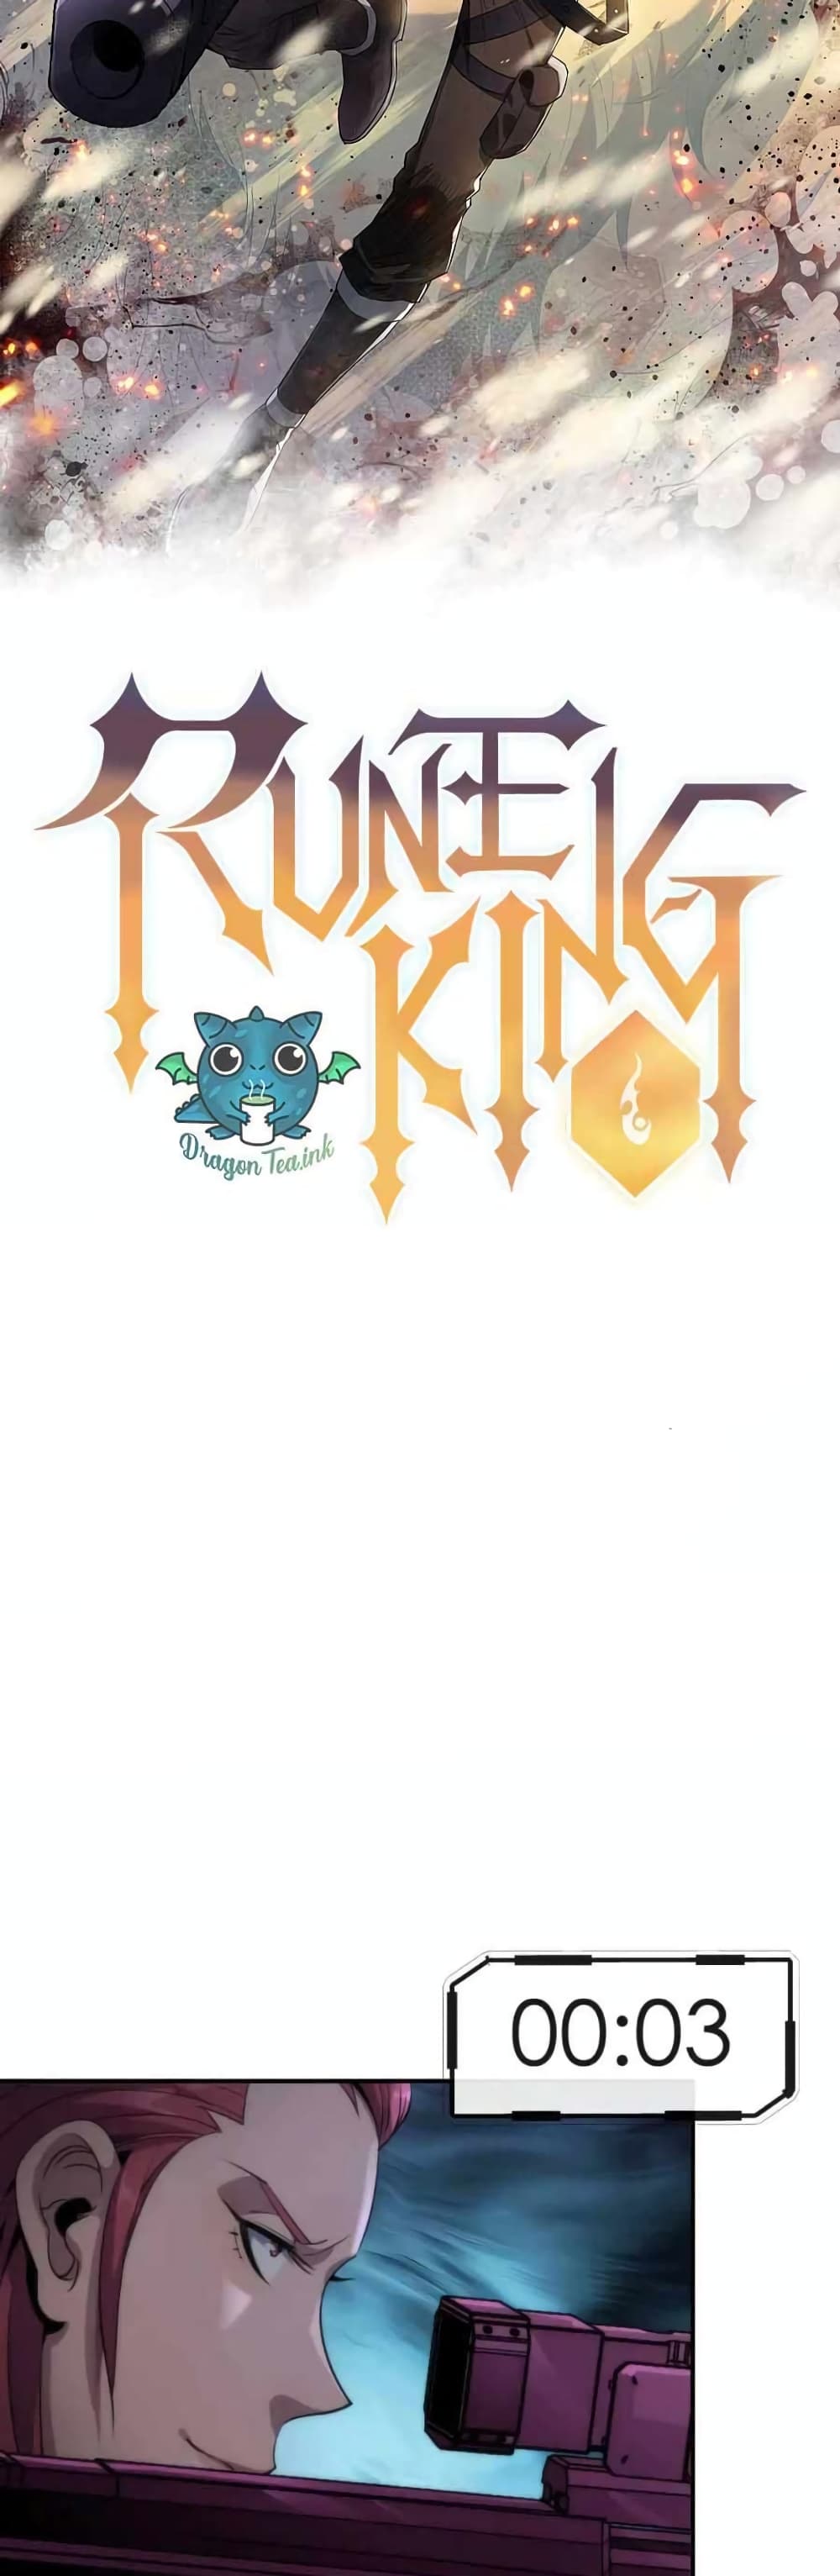 Rune King 16-16